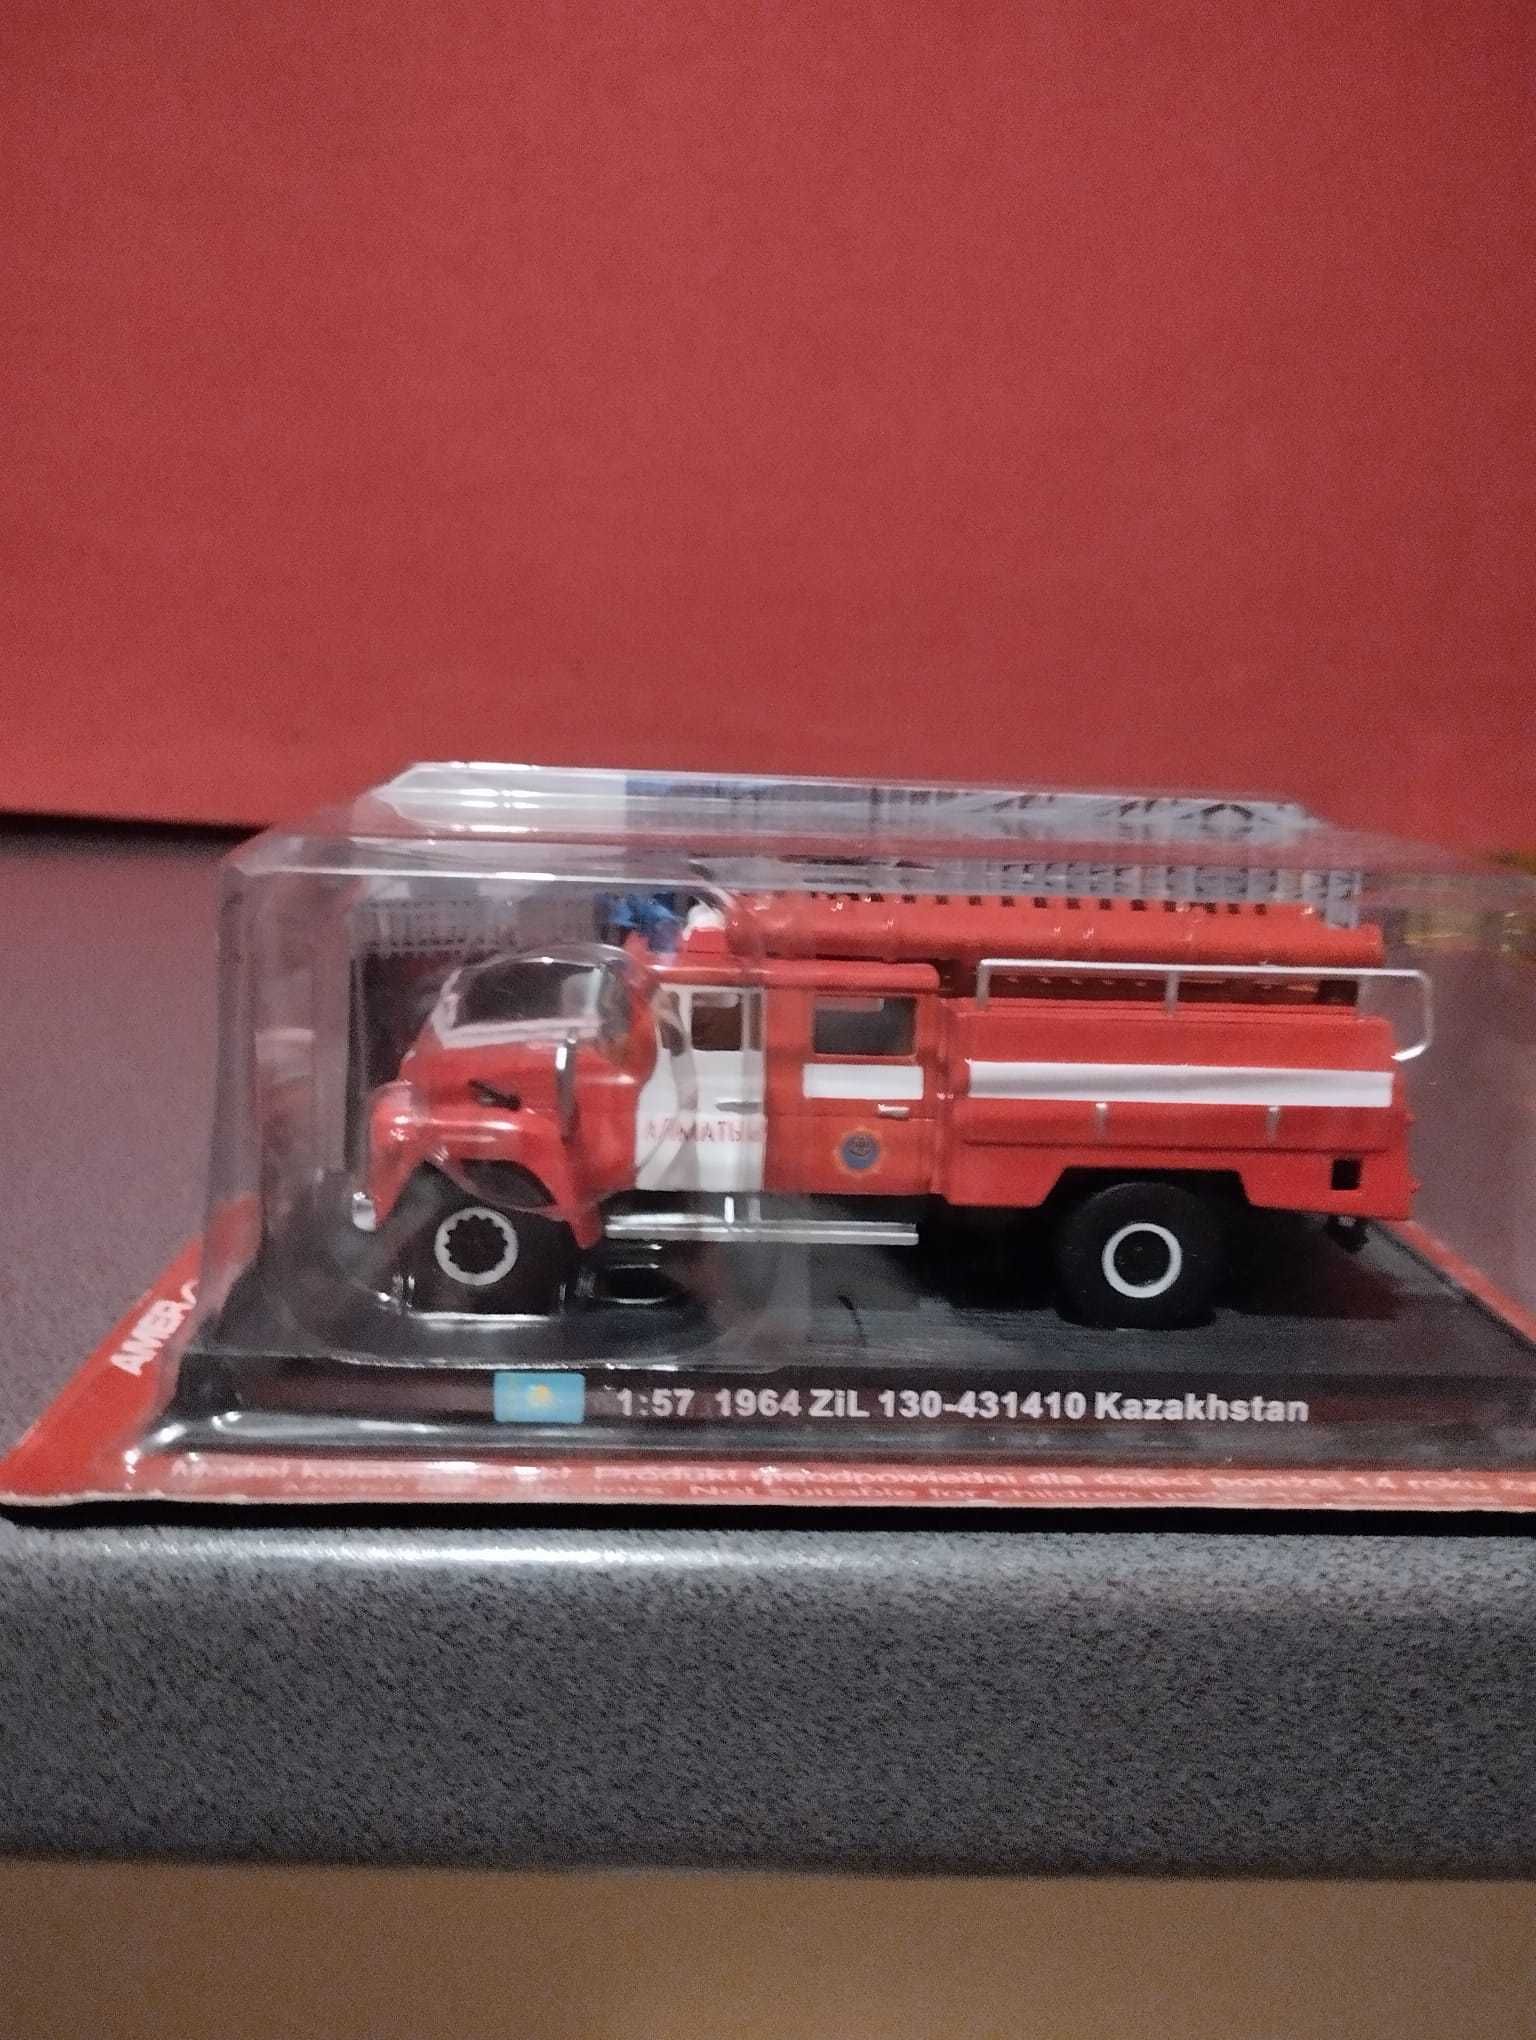 DEL PRADO 1:57 wóz straż pożarna - 1964 ZIŁ 130 - 431410 Kazahstan